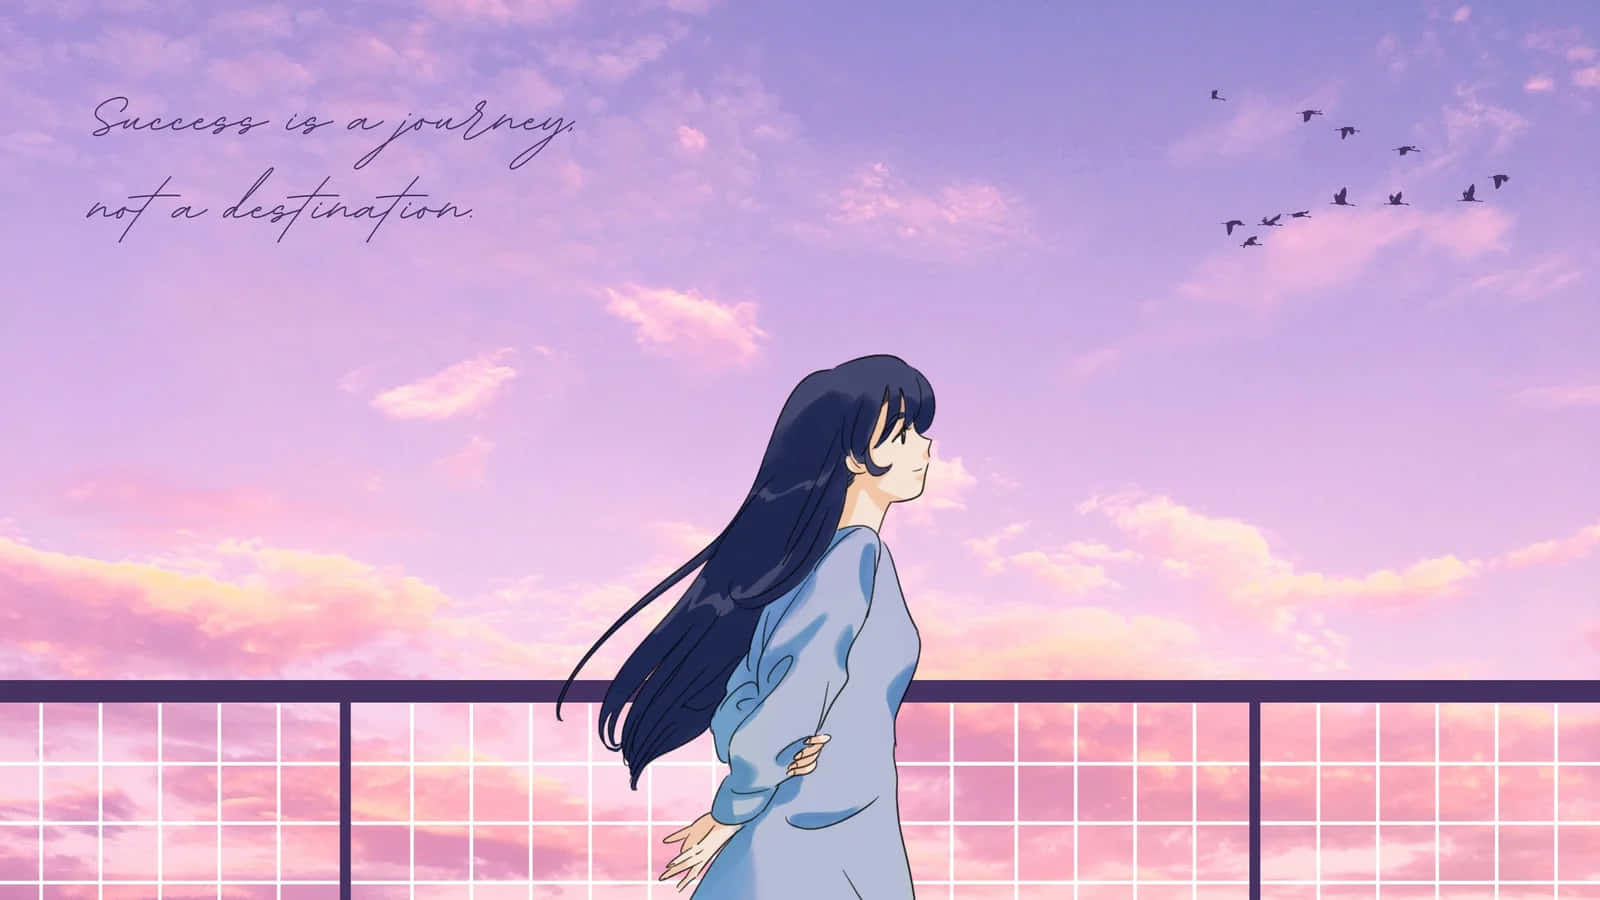 Pastel Sky Anime Girl Inspiration Wallpaper